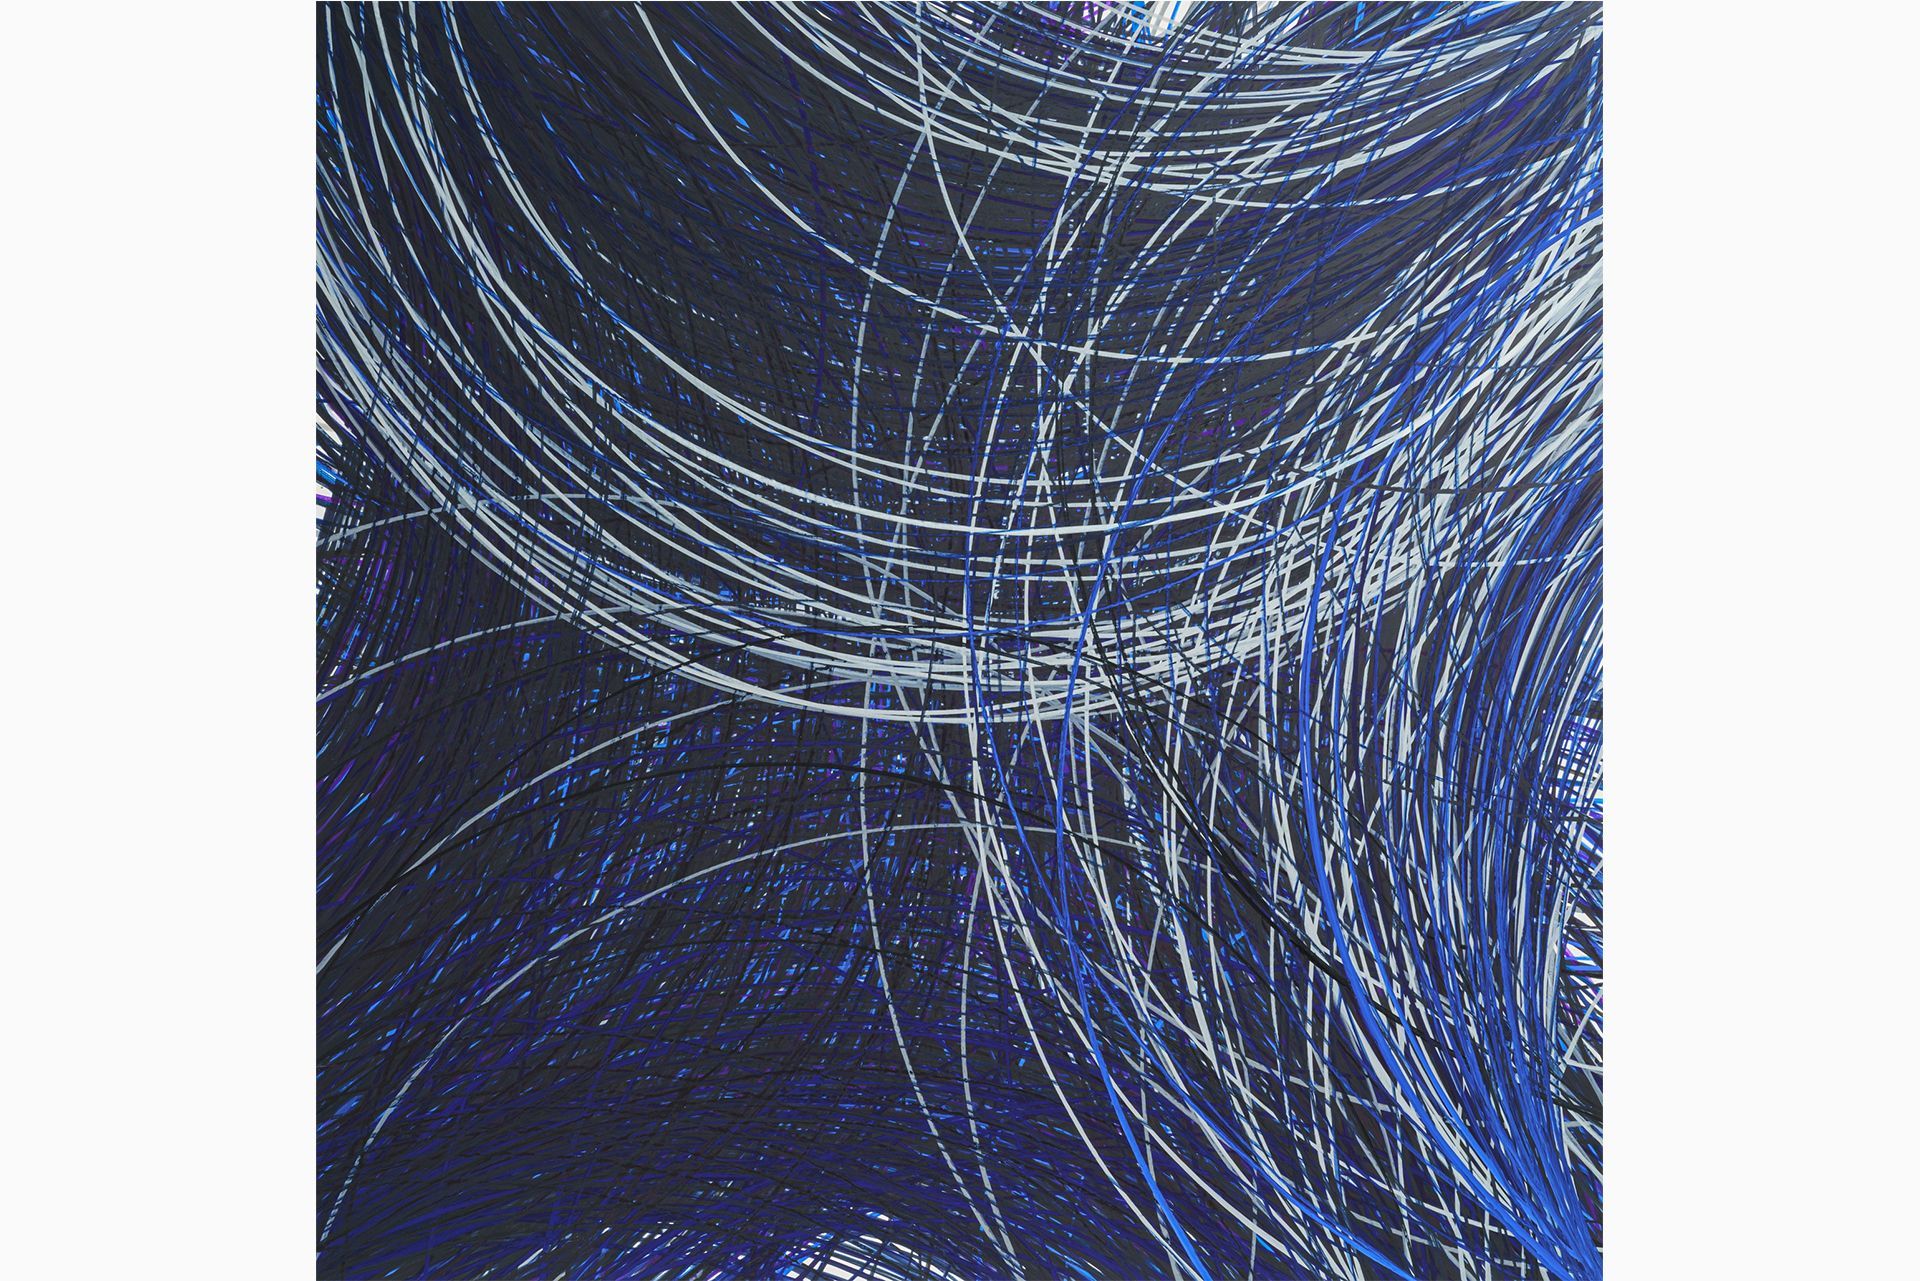 Peinture de l'artiste japonaise Mayu Kunihisa. Grande toile représentant des arcs de cercle en noir, bleu et blanc sur un fond bleu nuit.